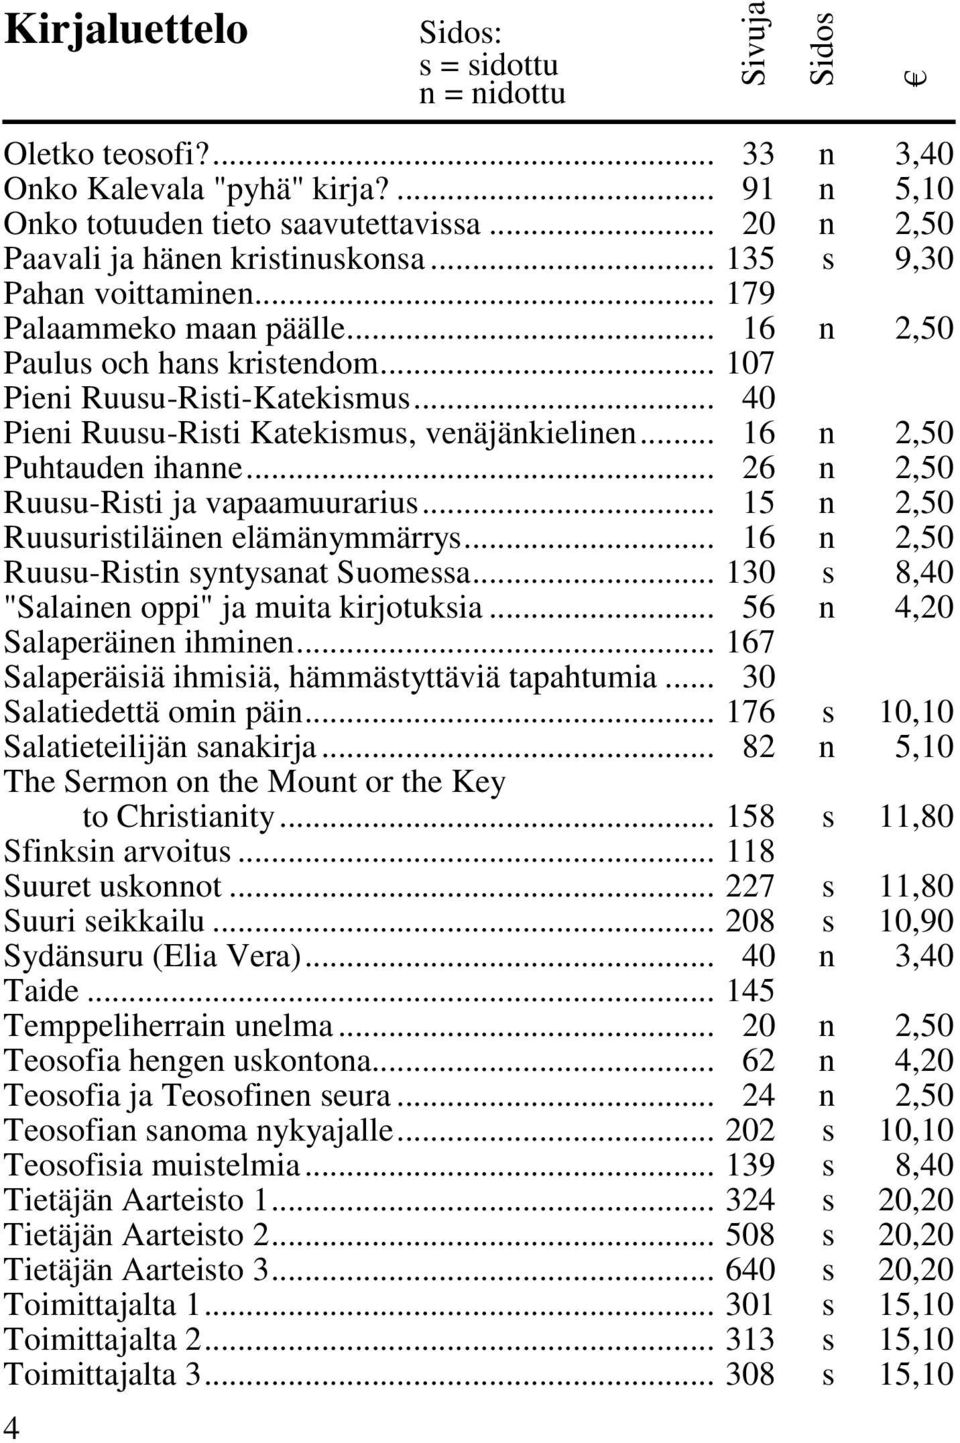 .. 26 n 2,50 Ruusu-Risti ja vapaamuurarius... 15 n 2,50 Ruusuristiläinen elämänymmärrys... 16 n 2,50 Ruusu-Ristin syntysanat Suomessa... 130 s 8,40 "Salainen oppi" ja muita kirjotuksia.